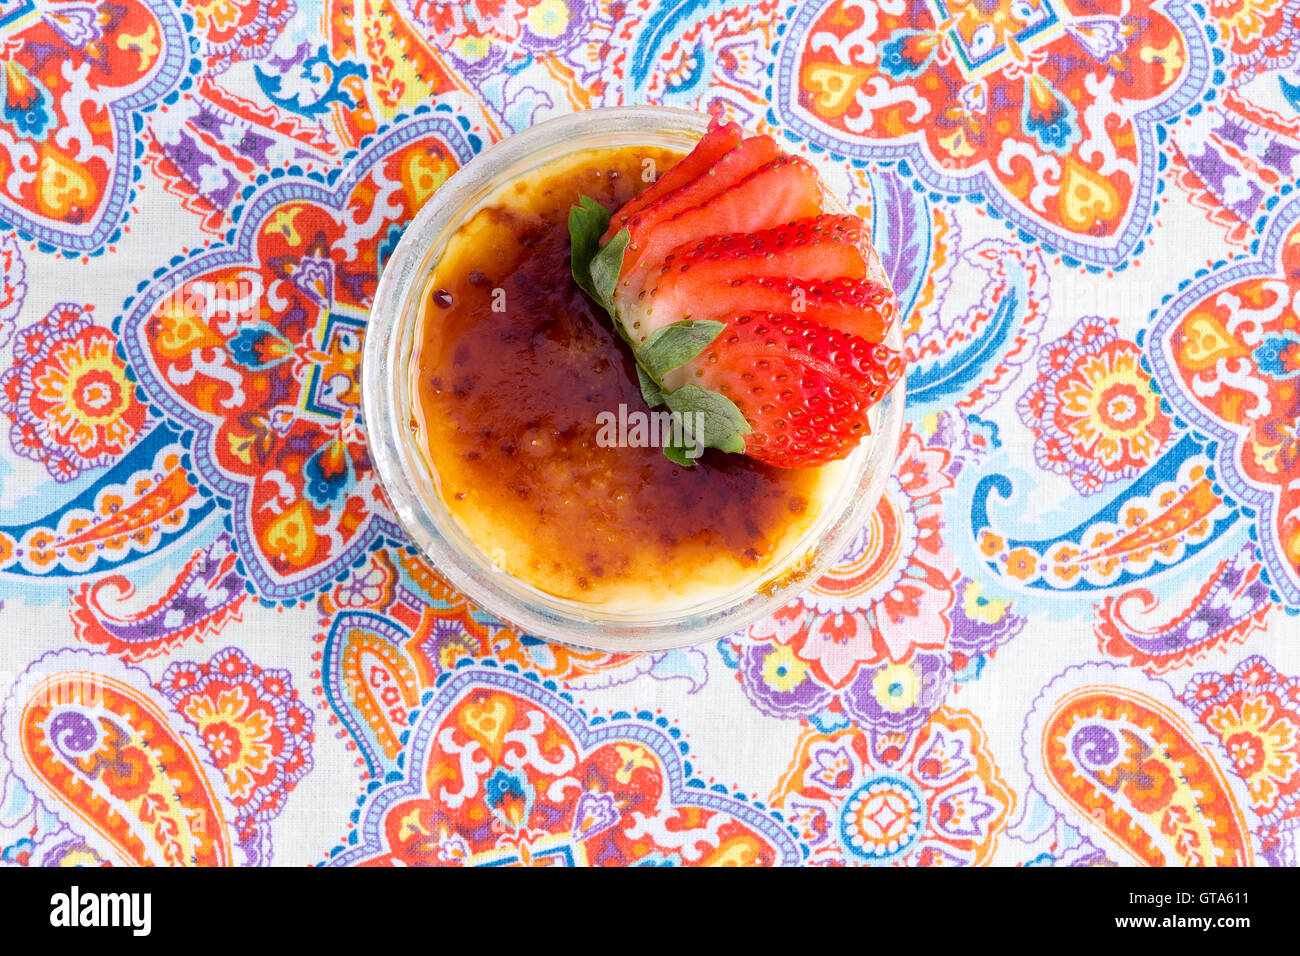 Leckeren Schüssel mit Crème brûlée mit frischen Erdbeeren auf paisley Tisch platziert, wie aus einer Draufsicht zu sehen Stockfoto